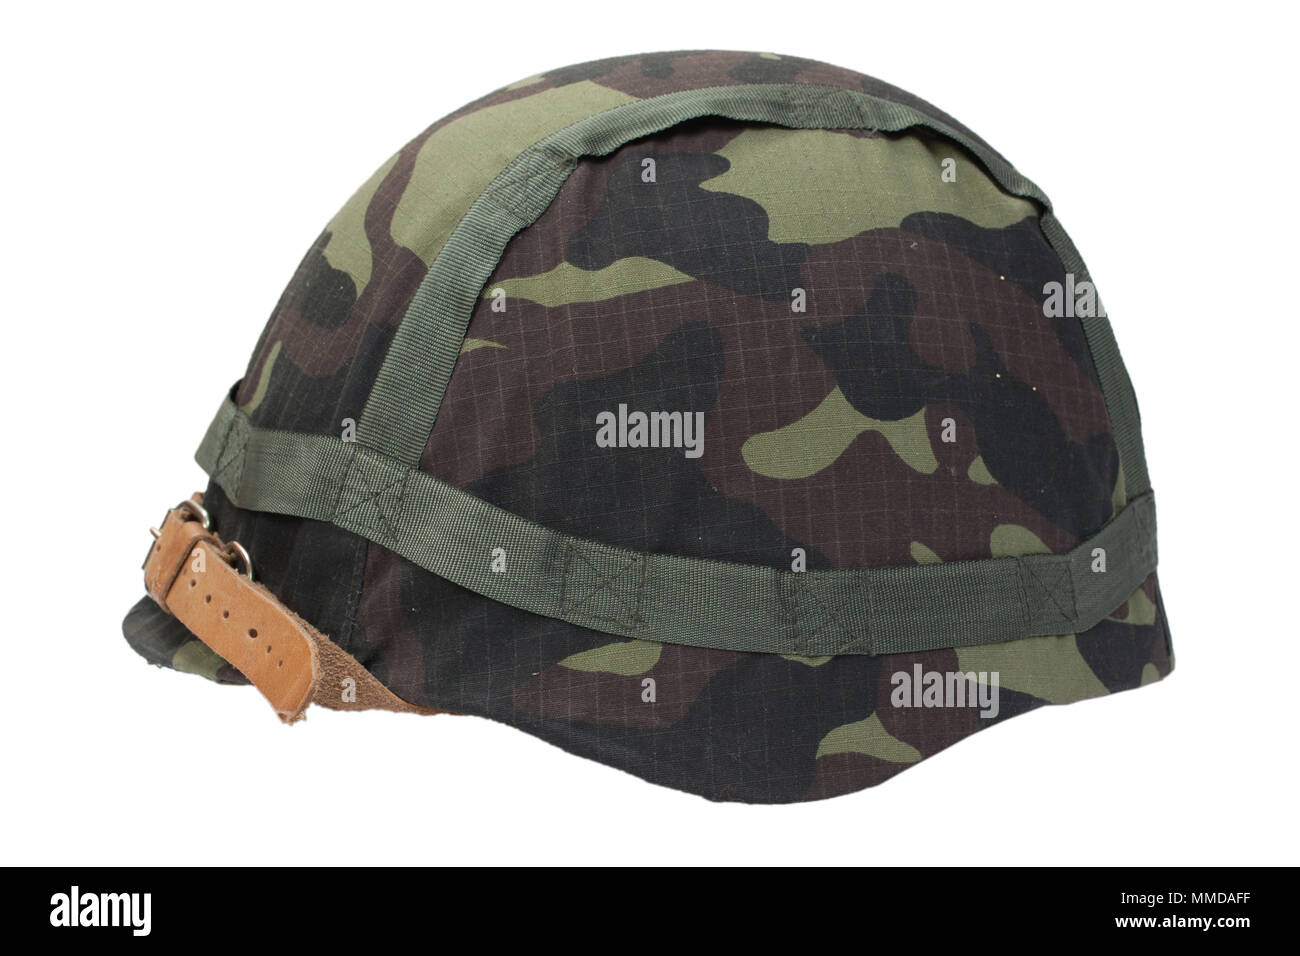 camouflage military helmet Stock Photo